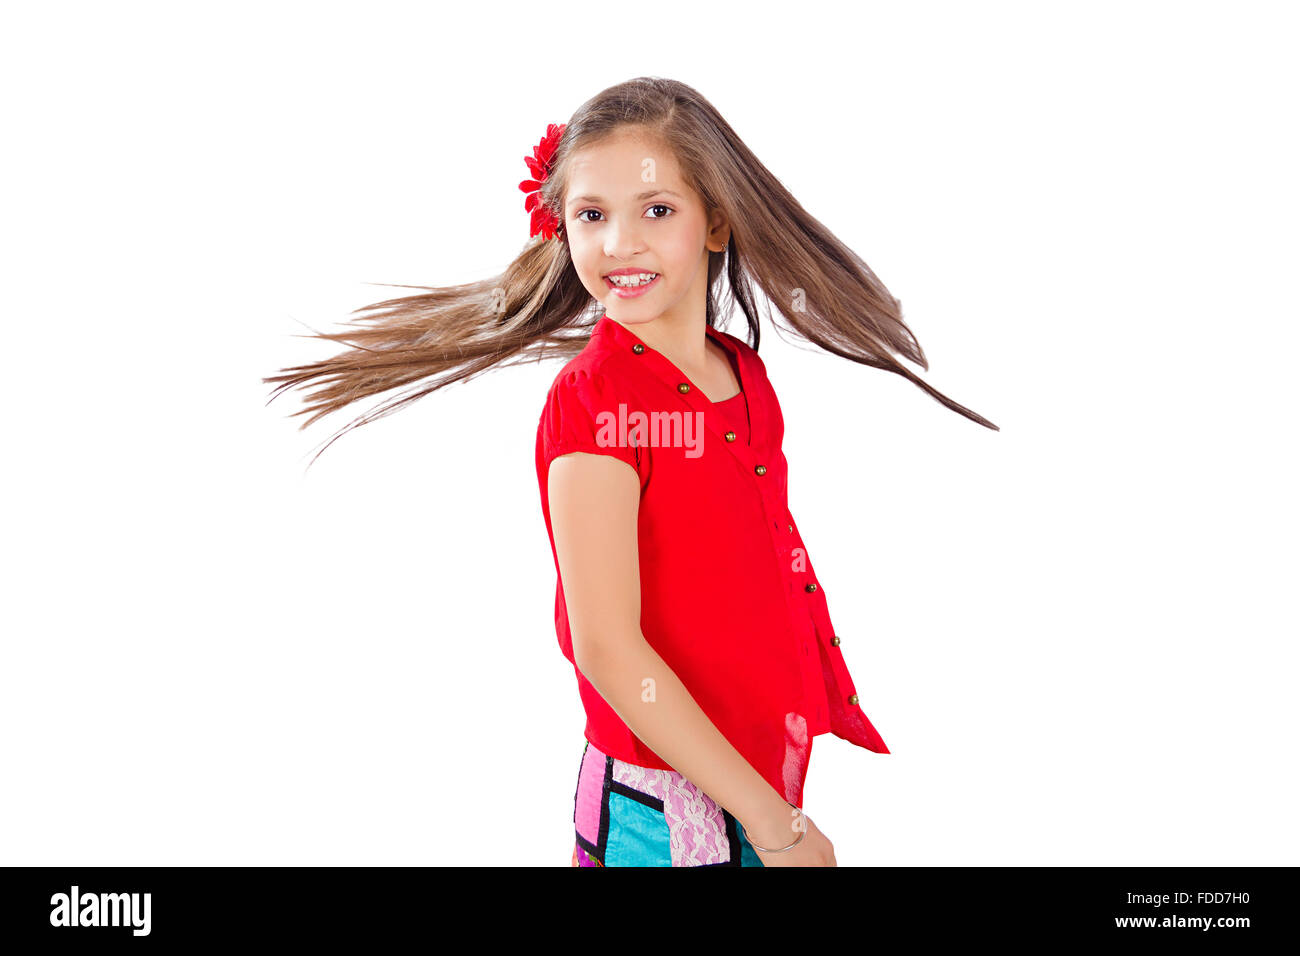 1 schönes Kind stehendes Mädchen zerzaustem Haar Stockfoto